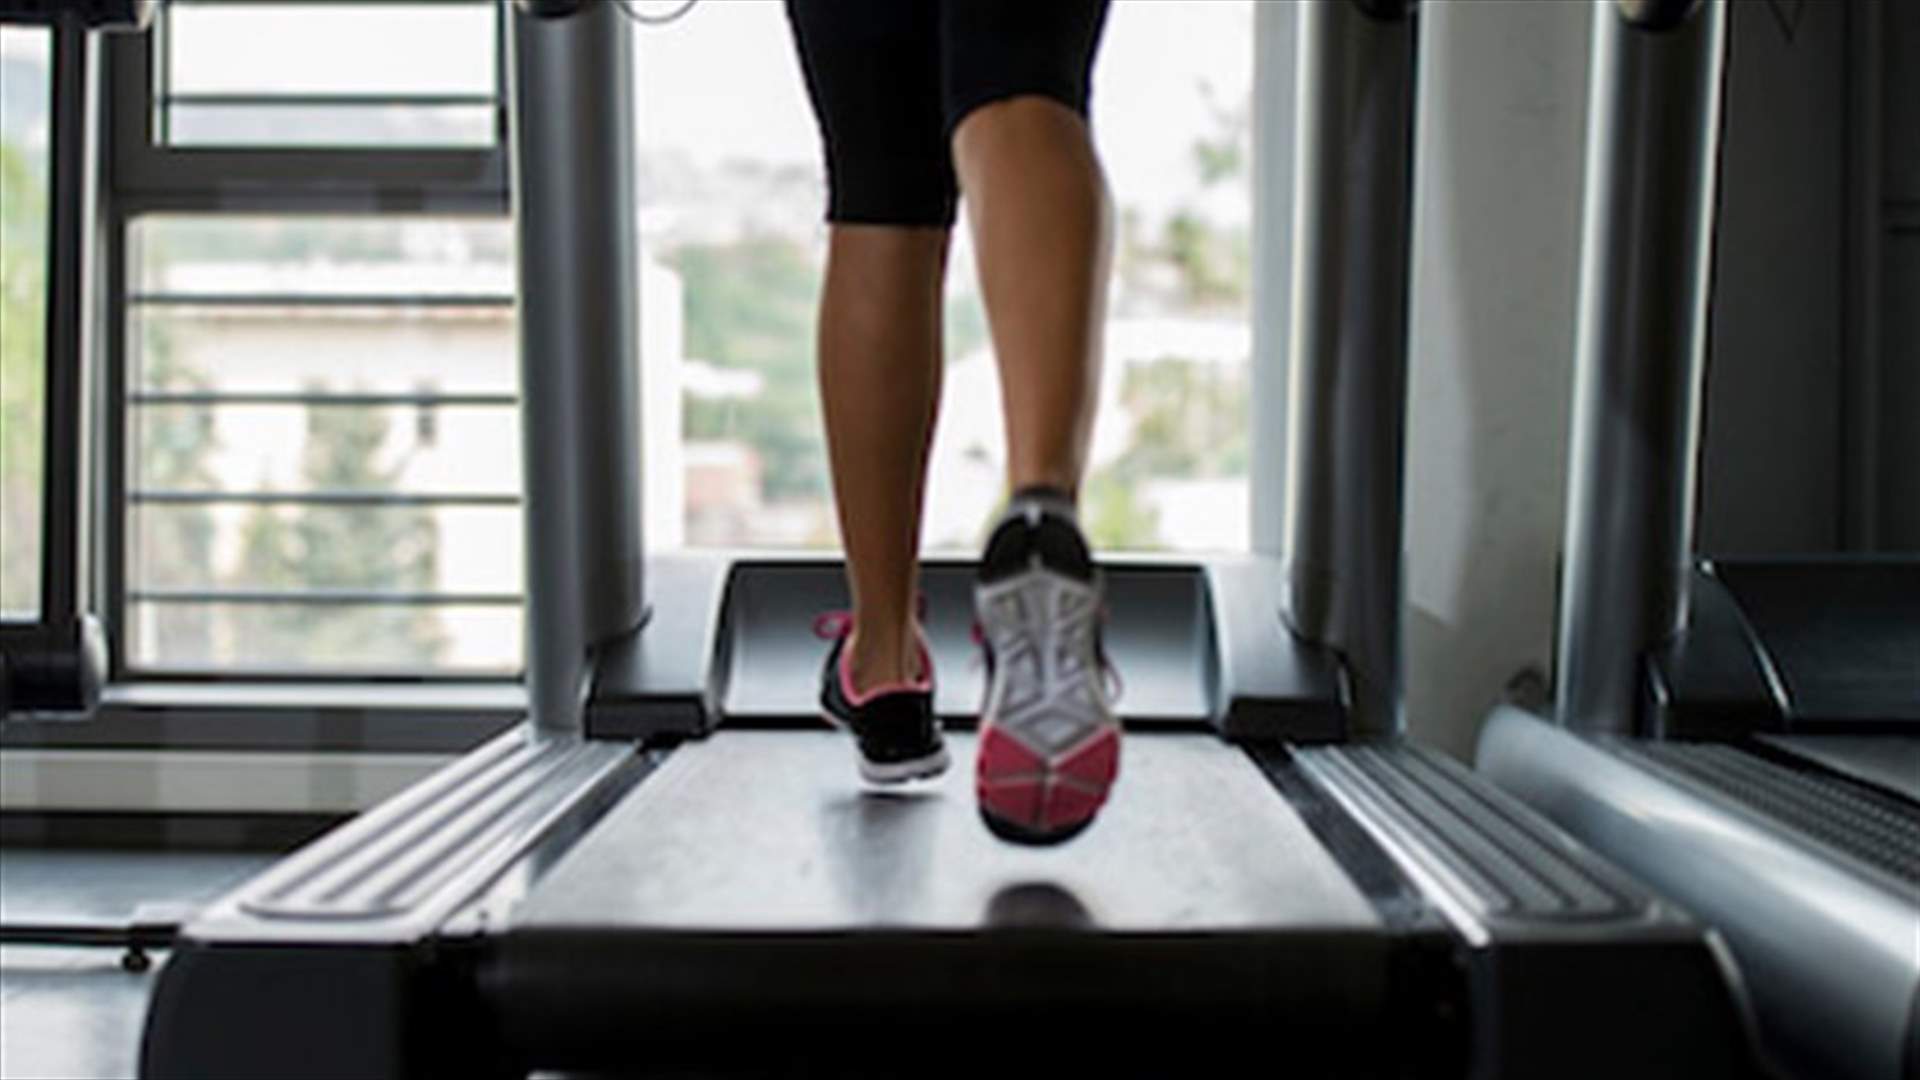 بالفيديو: طريقة جديدة لممارسة الرياضة على الـ treadmill تفوق التوقعات